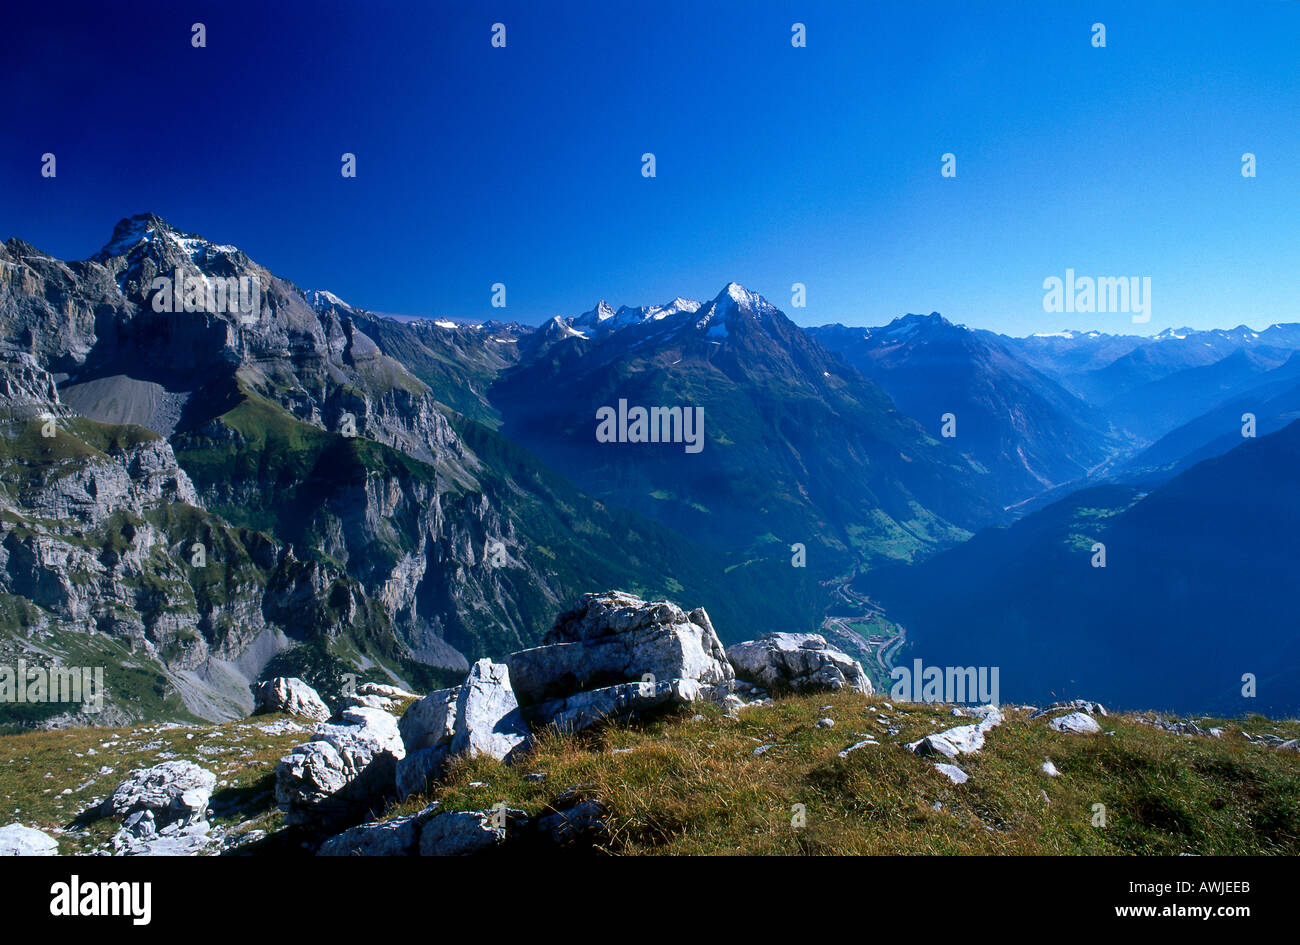 Angolo di alta vista della valle in mountain range, alpi svizzere, Svizzera Foto Stock